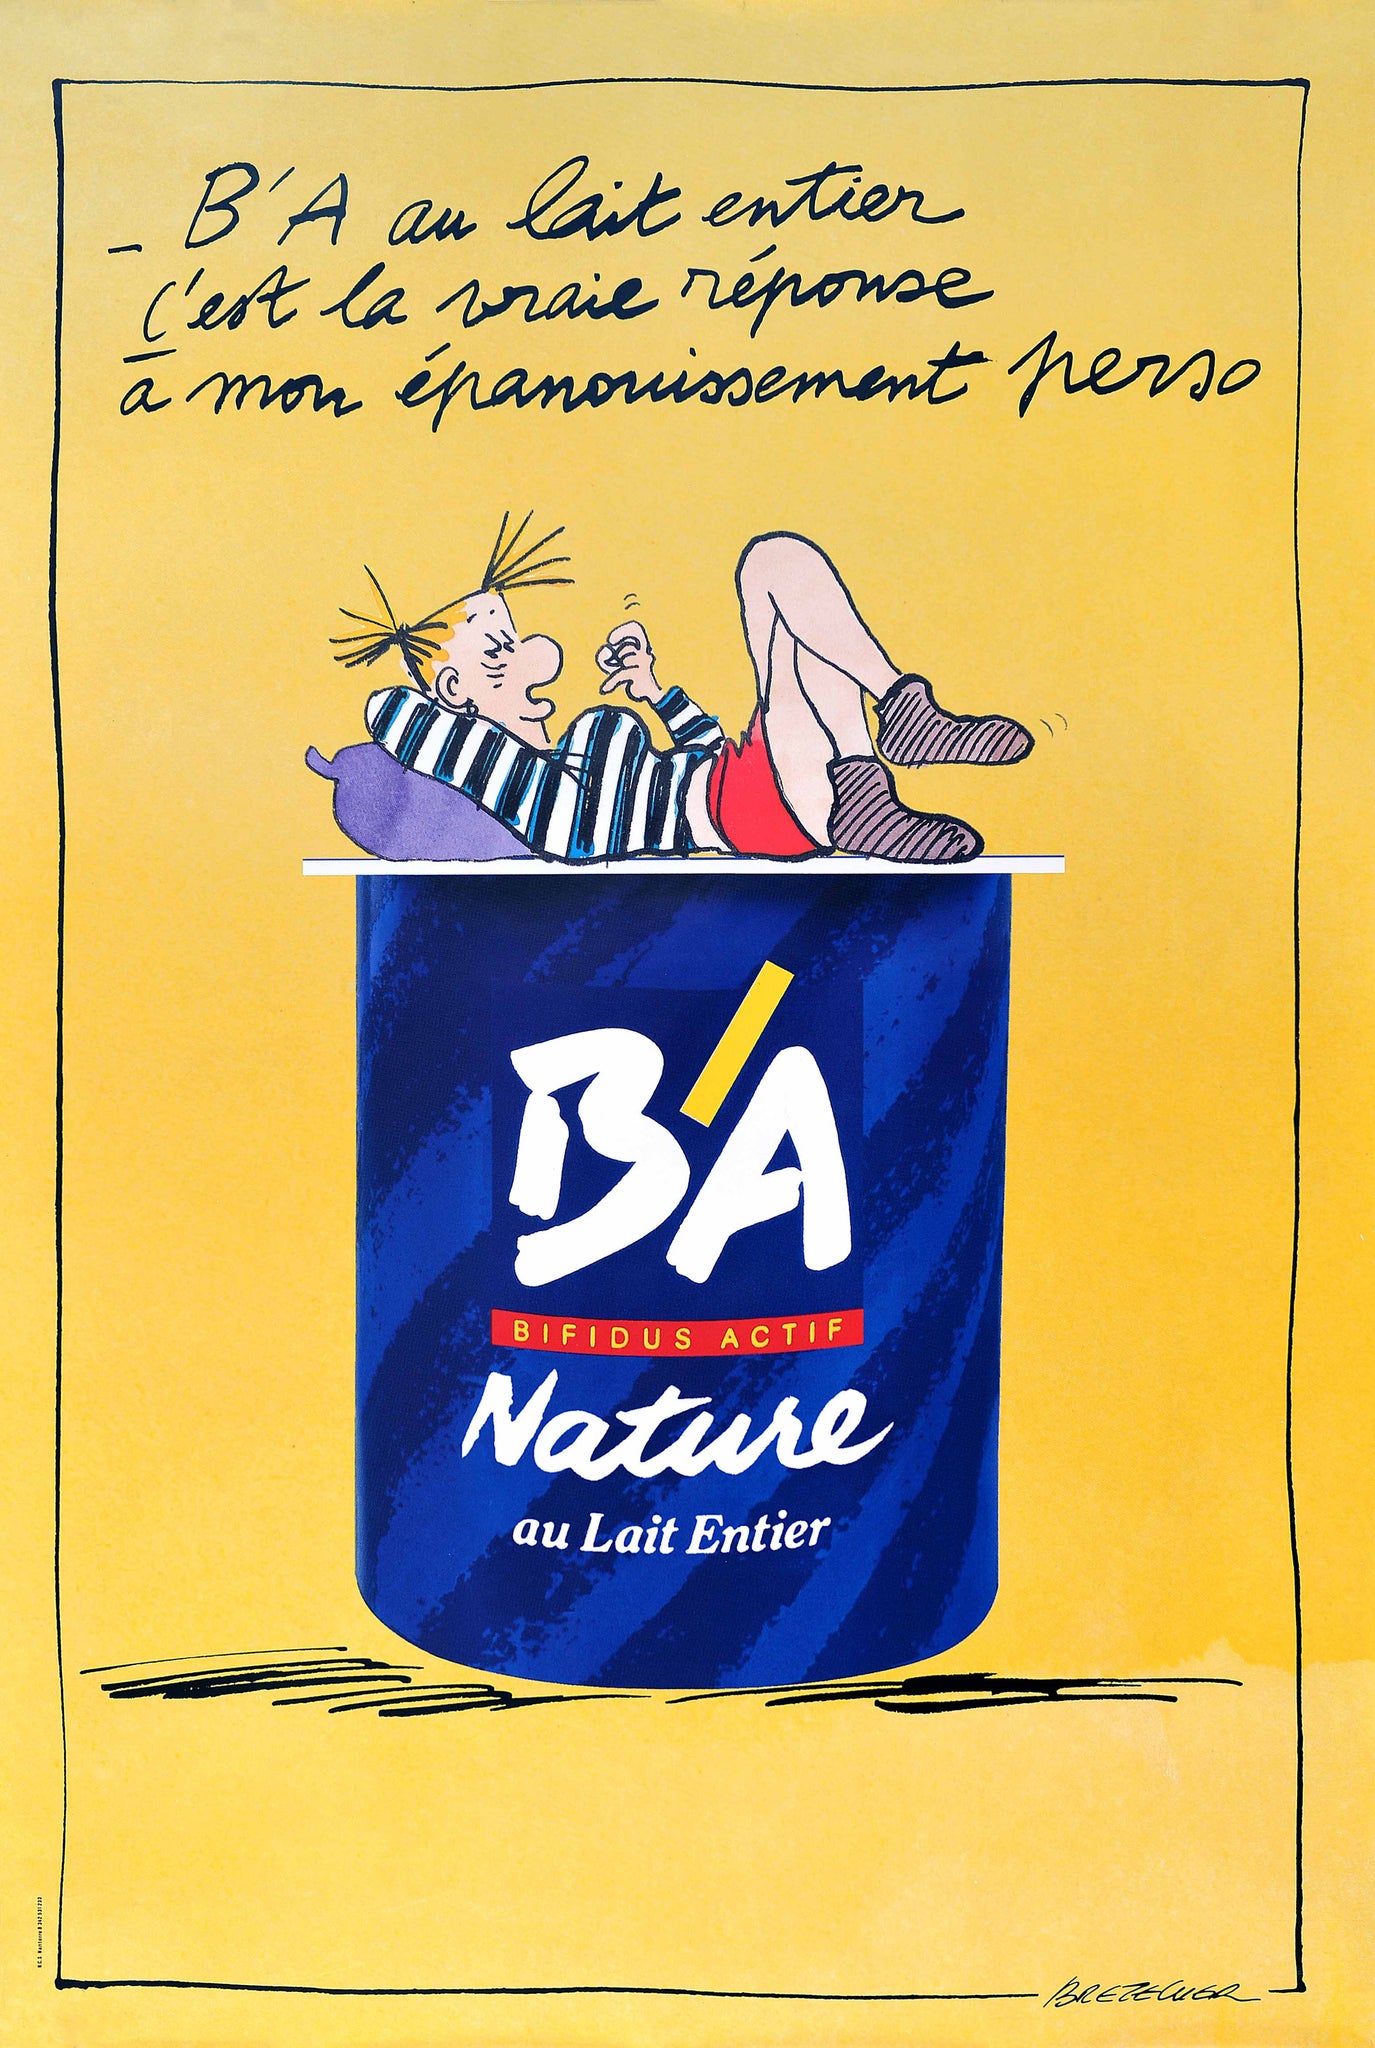 Affiche Publicitaire Yaourt B'A Nature au Lait Entier (Version Jaune) par Bretecher, Circa 1990